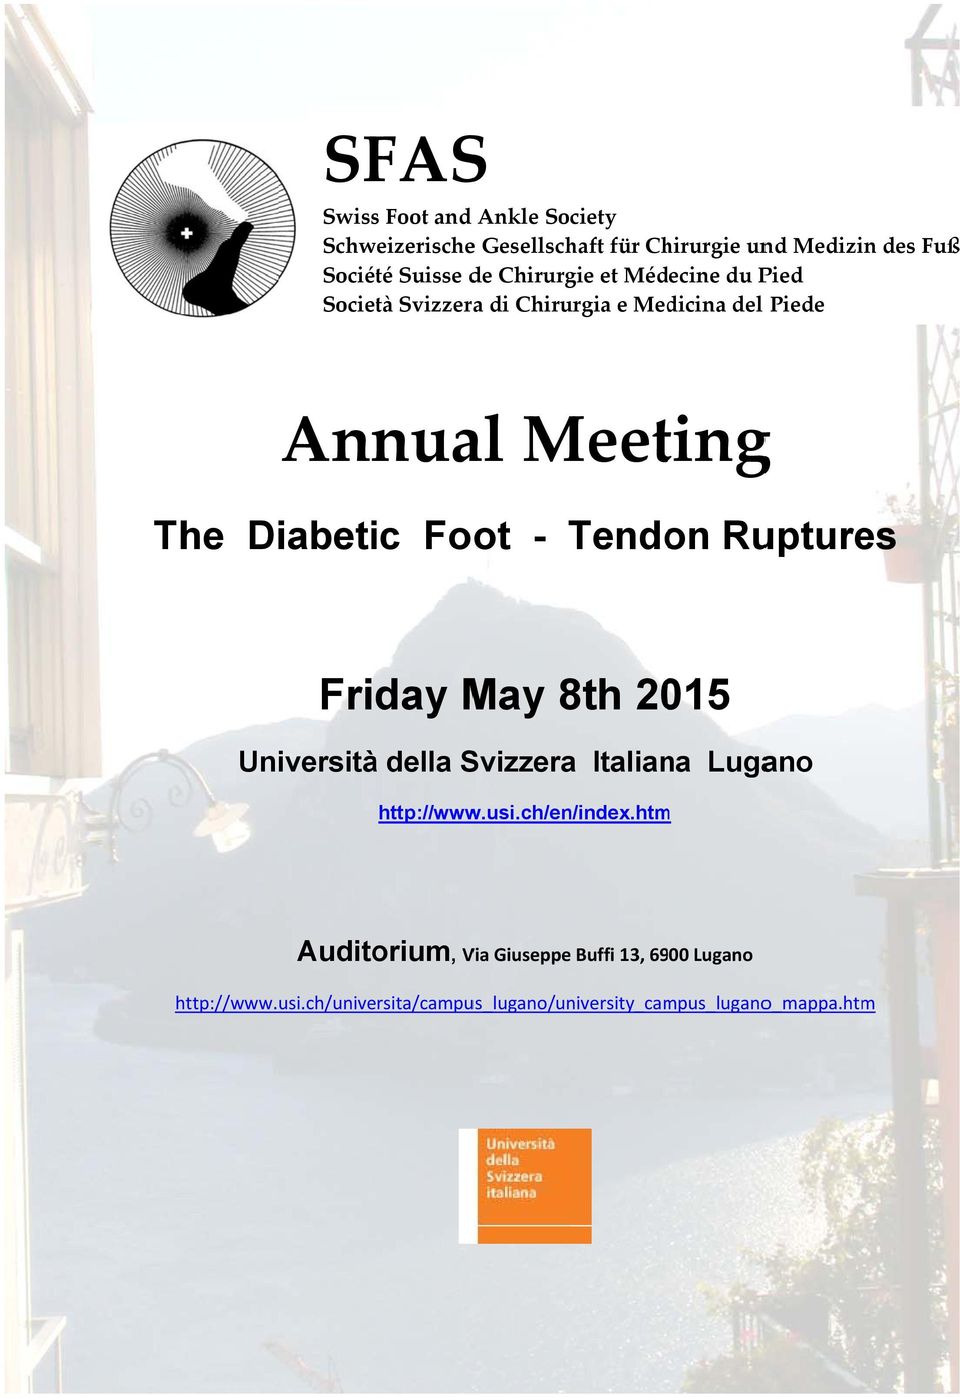 Diabetic Foot - Tendo on Ruptures Friday May 8th 2015 Università della Svizzera Italiana Lugano http://www.